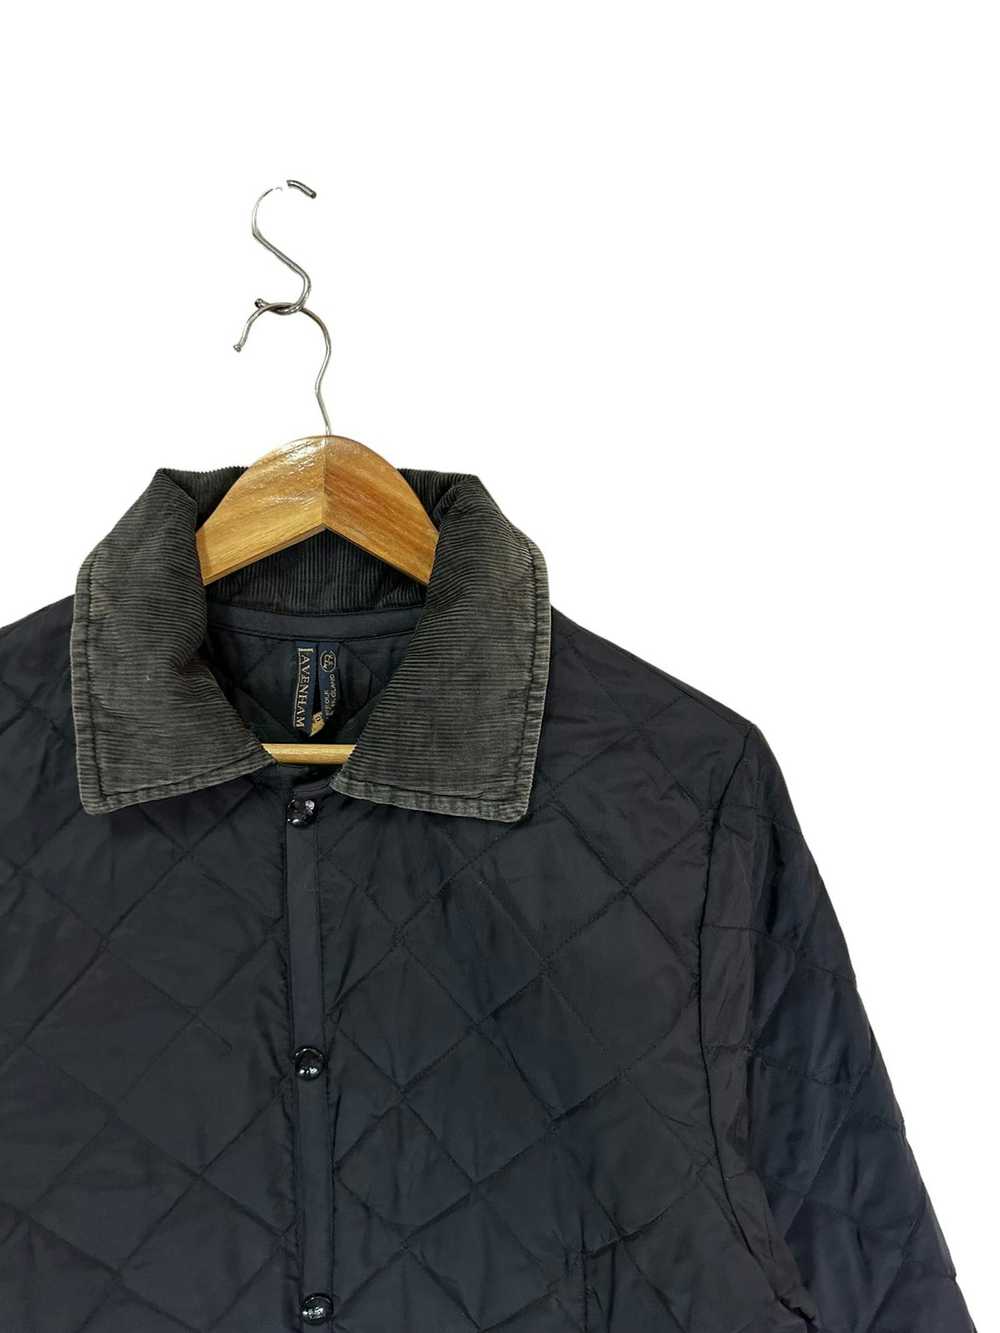 Lavenham Lavenham quilted jacket - image 4